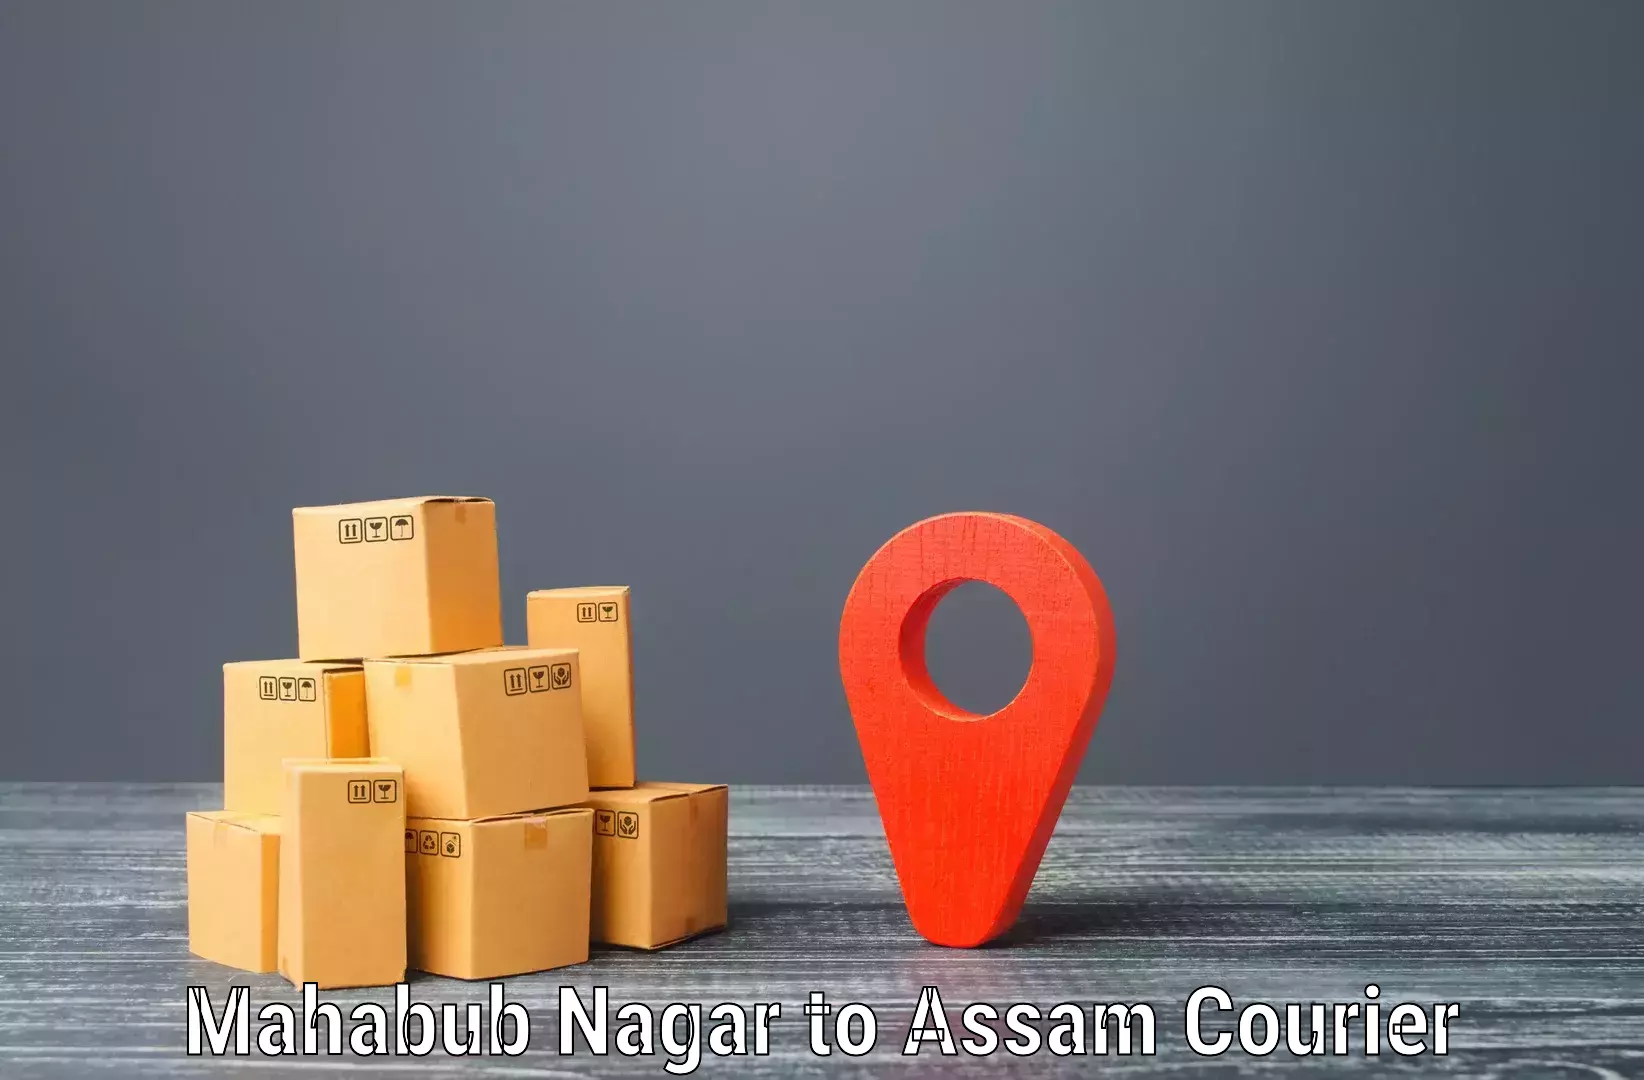 Digital shipping tools Mahabub Nagar to Boko